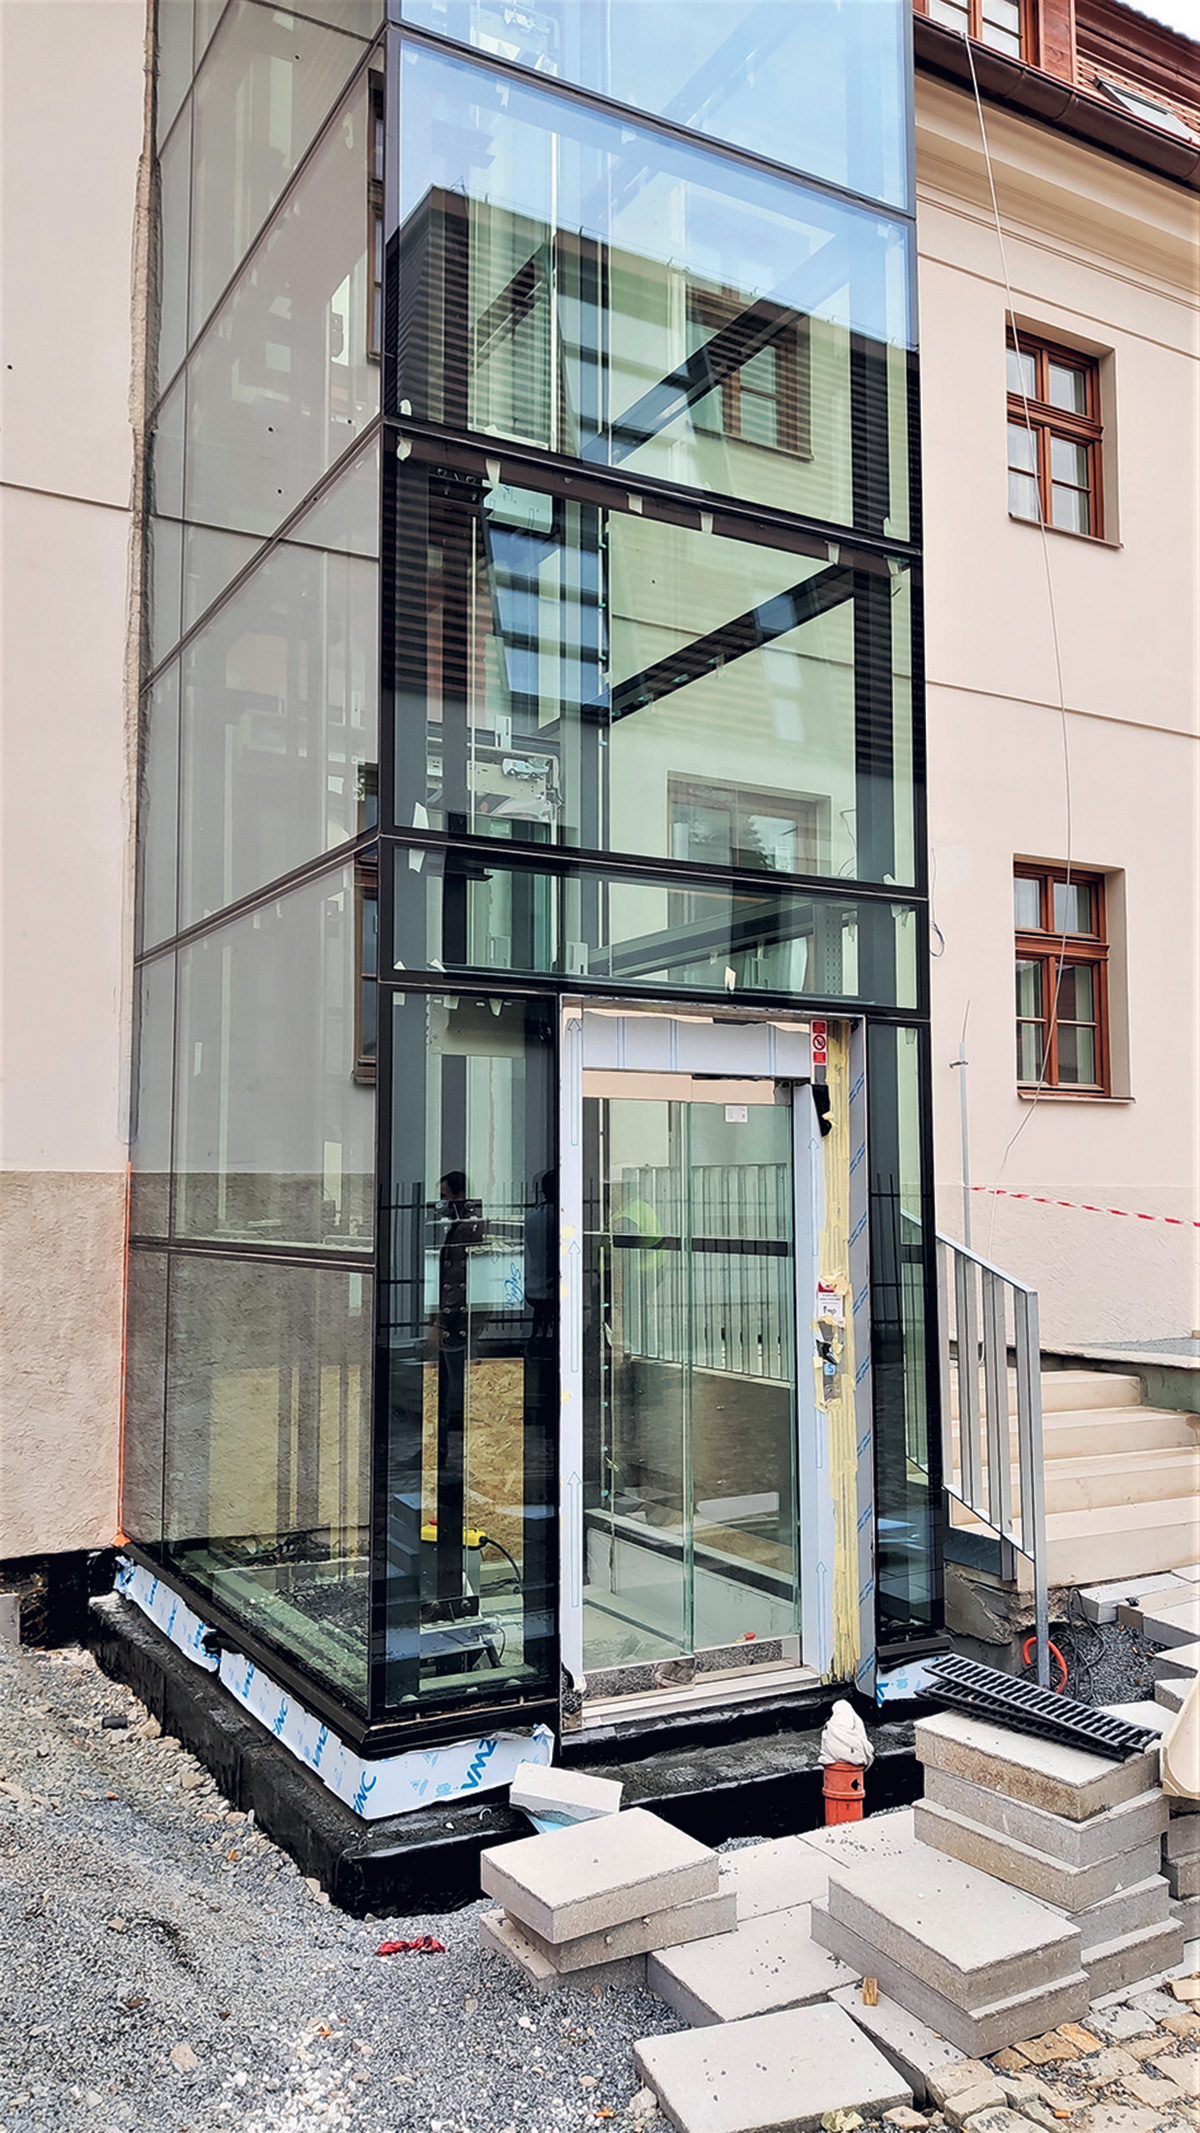 Díky výtahu bude zajištěn bezbariérový přístup do budovy